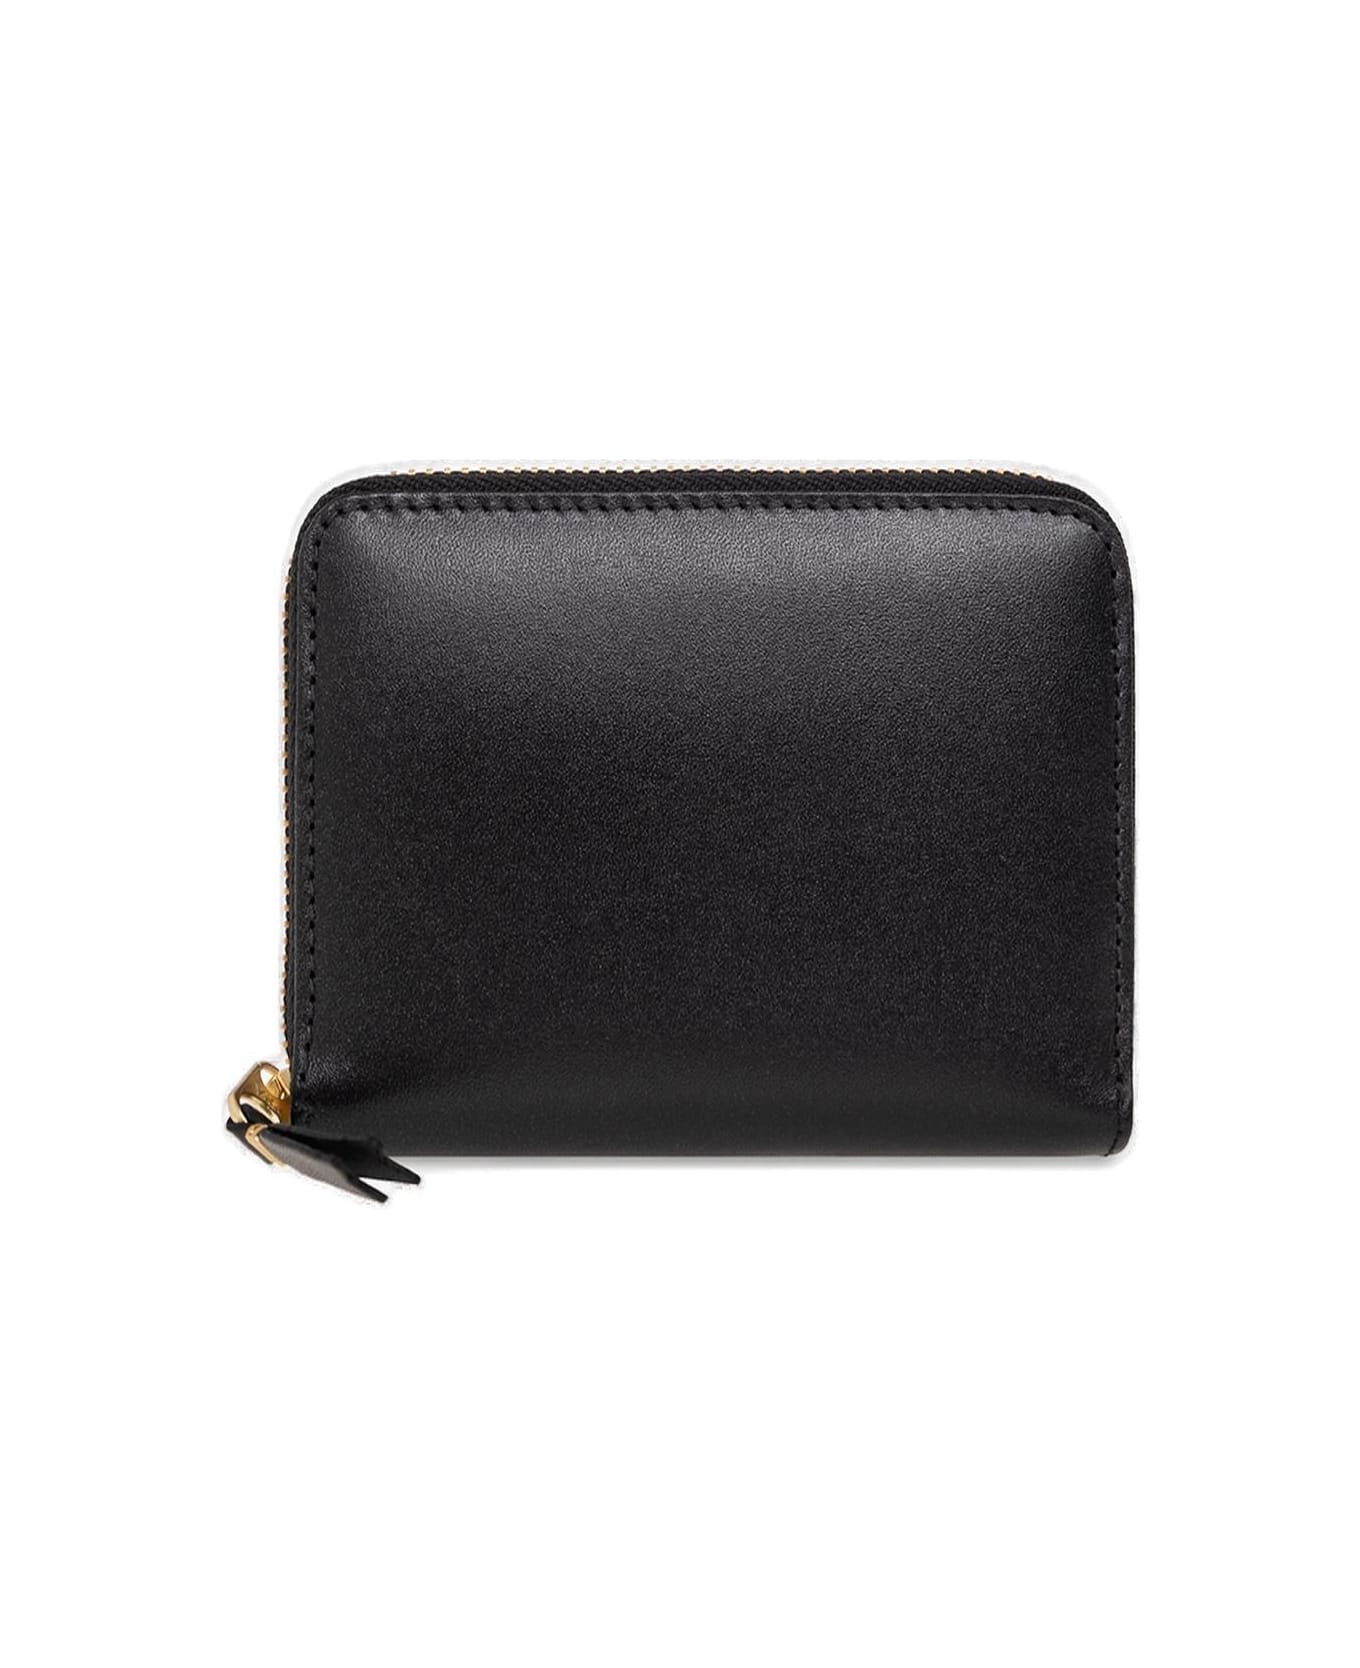 Comme des Garçons Wallet Classic Zipped Wallet - Black